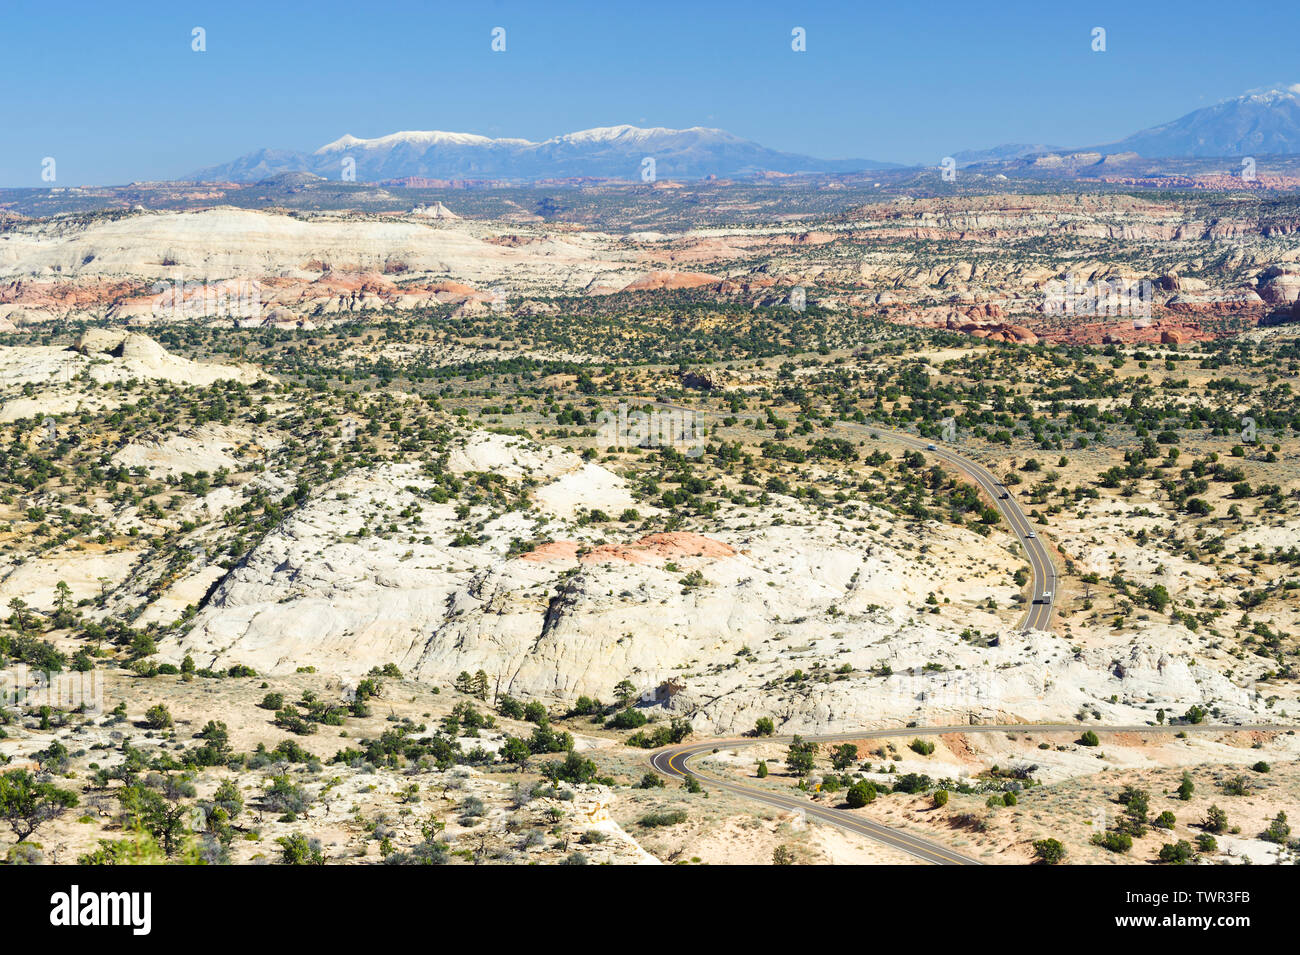 Scenic Byway 12 passando attraverso il paesaggio desertico, visto dalla testa delle rocce si affacciano vicino a Escalante, Utah. Henry Mountains in background. Foto Stock